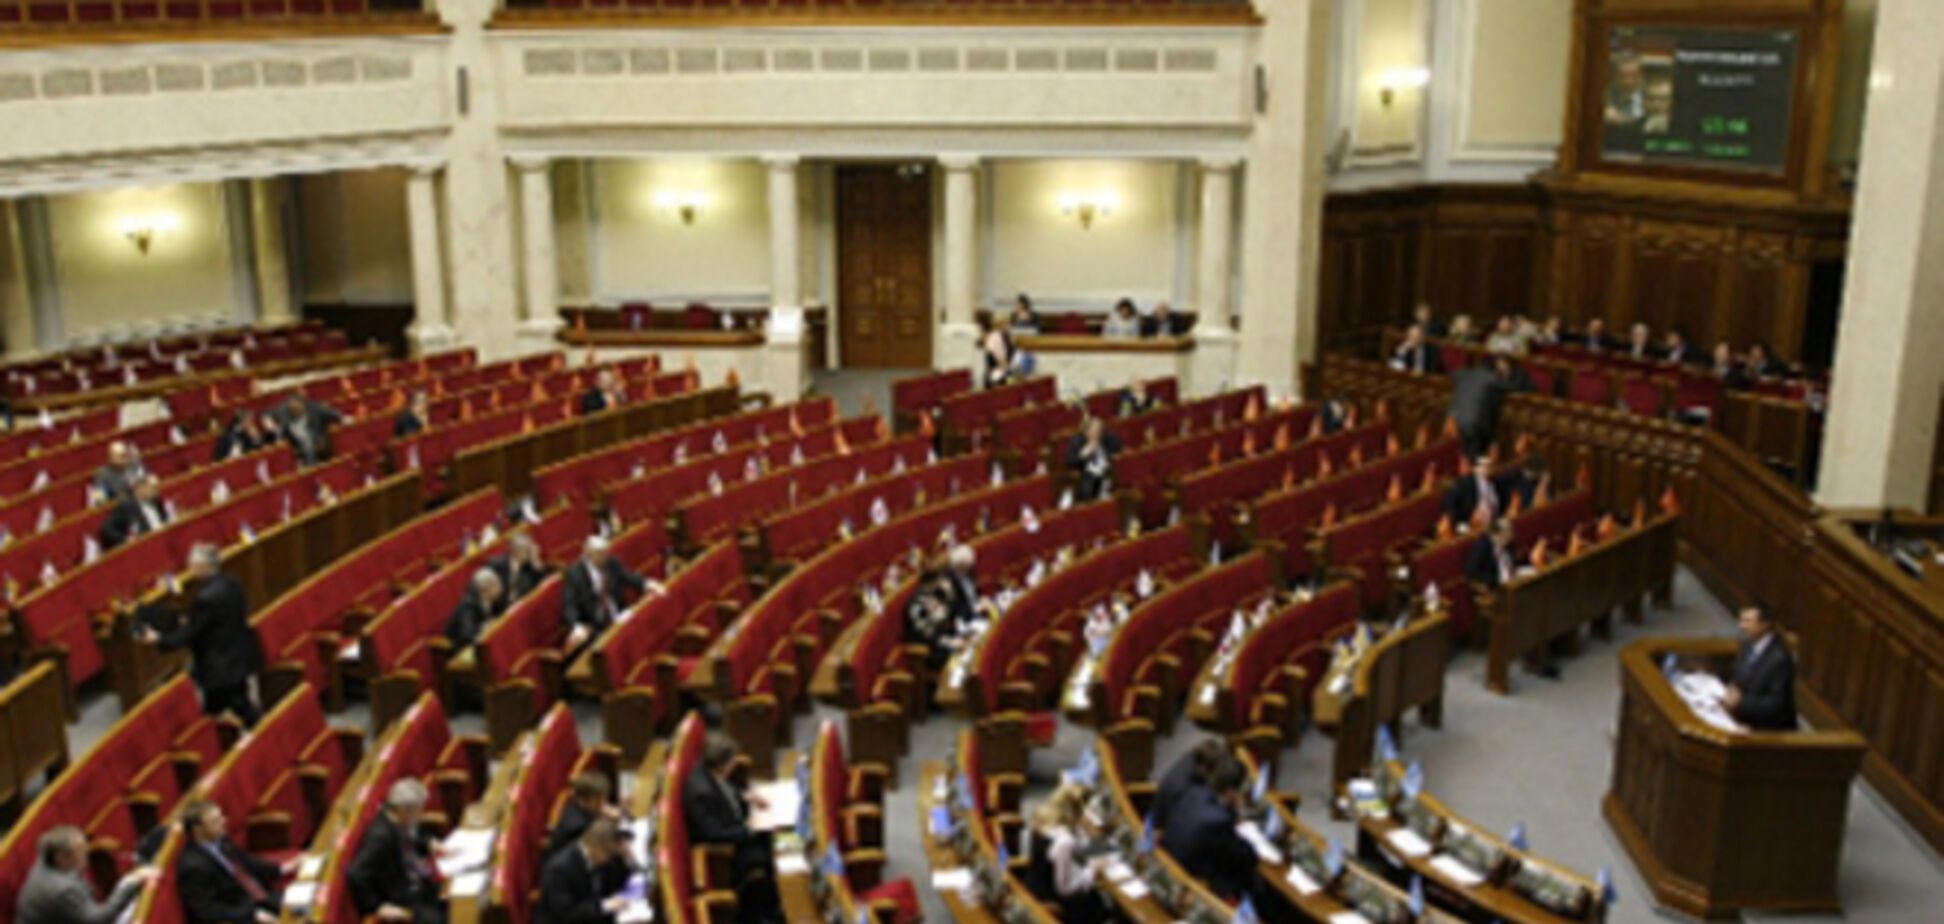 Яценюк останется премьером, если 'Народный фронт' наберет достаточную поддержку избирателей  - Сюмар